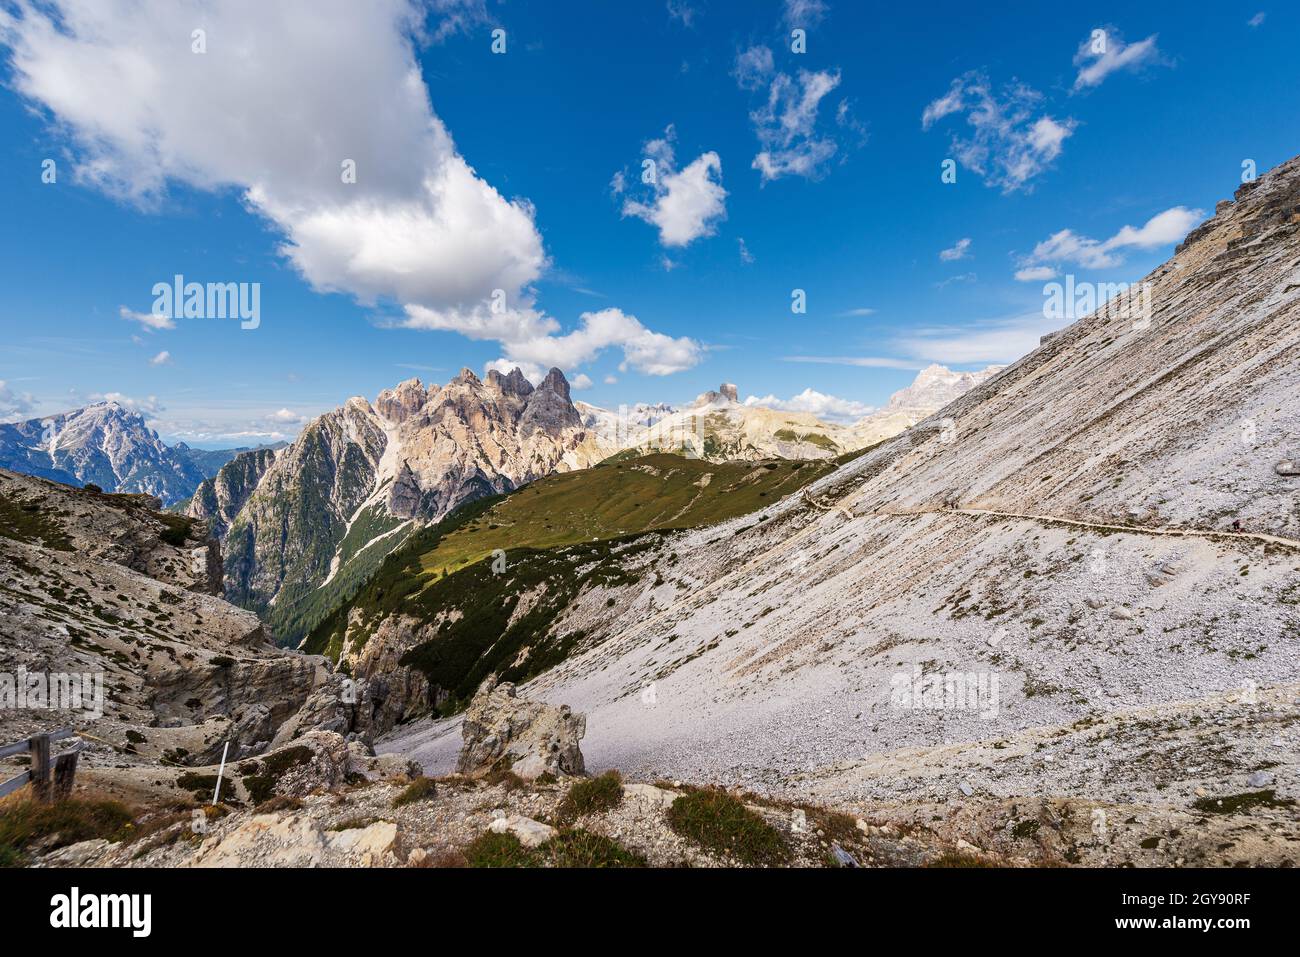 Sesto Dolomites from Tre Cime di Lavaredo. Peaks of Picco di Vallandro, Monte Rudo, Croda dei Rondoi, Torre dei Scarperi, Cima Piatta Alta. Italy. Stock Photo